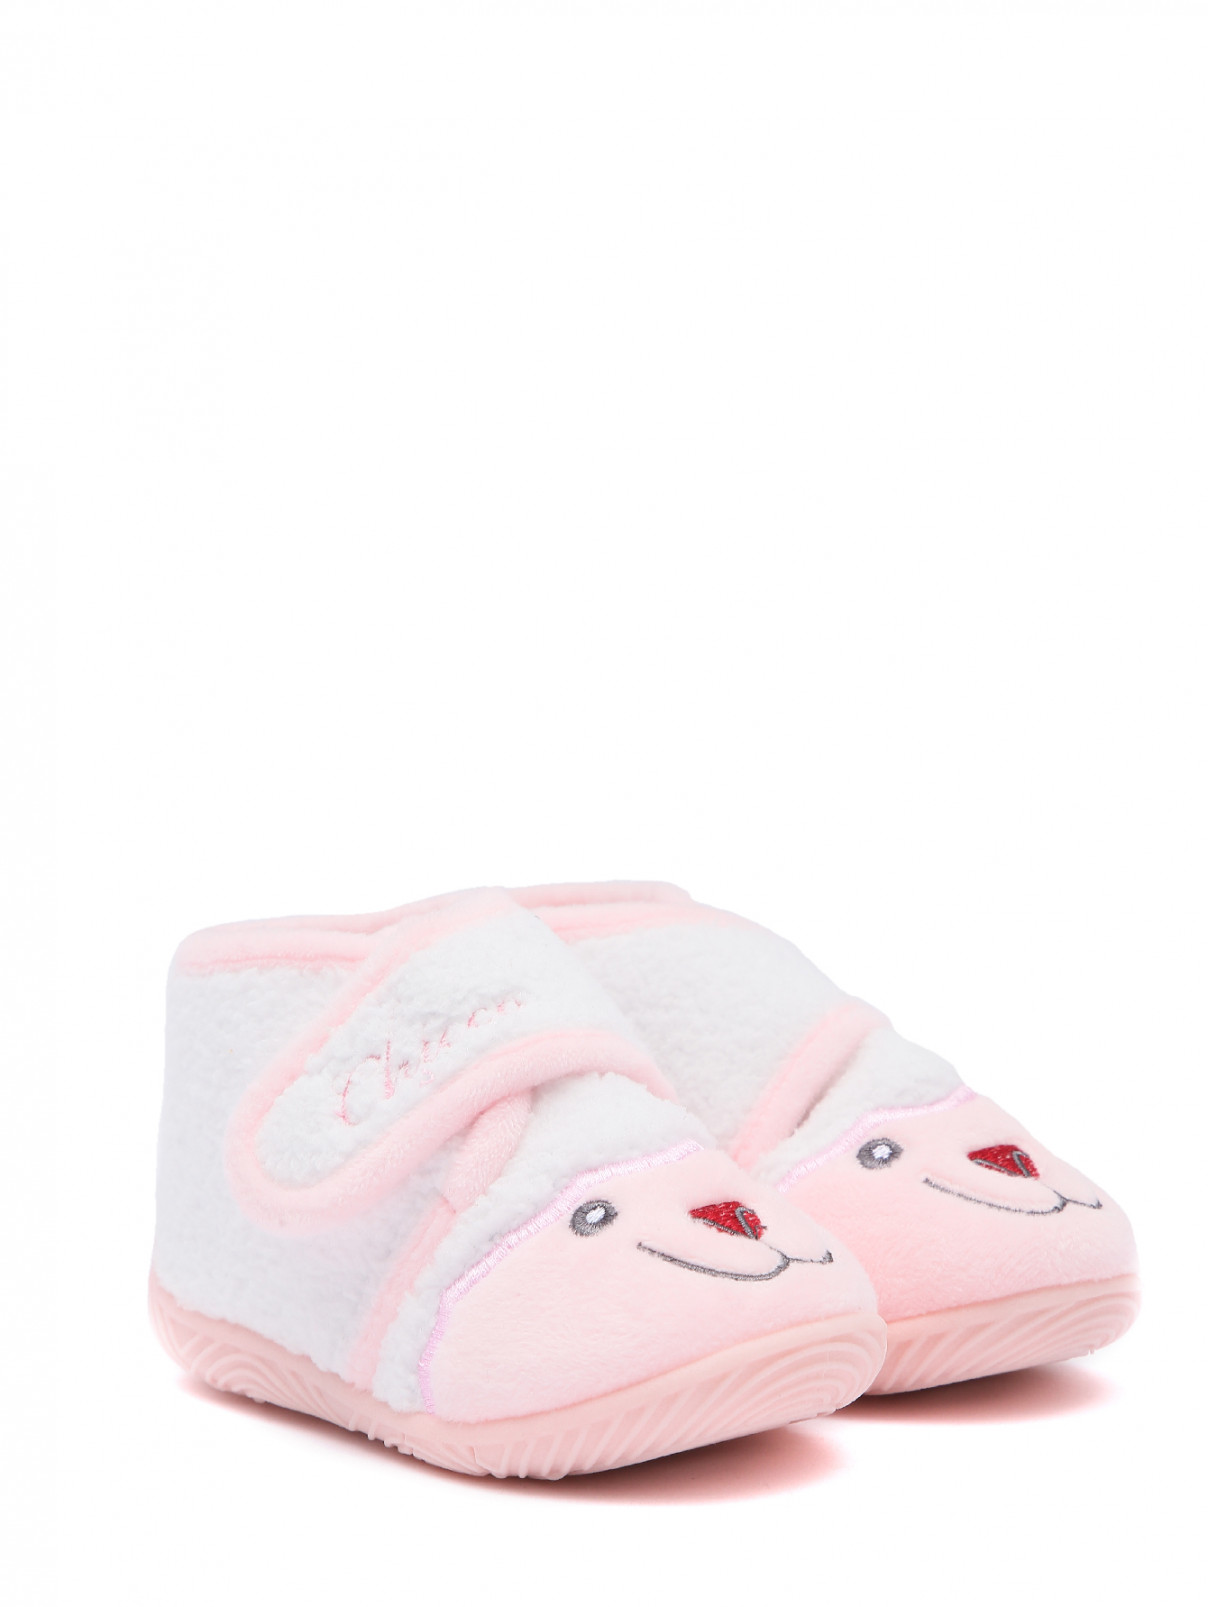 Ботинки из текстиля с вышивкой Chicco  –  Общий вид  – Цвет:  Розовый